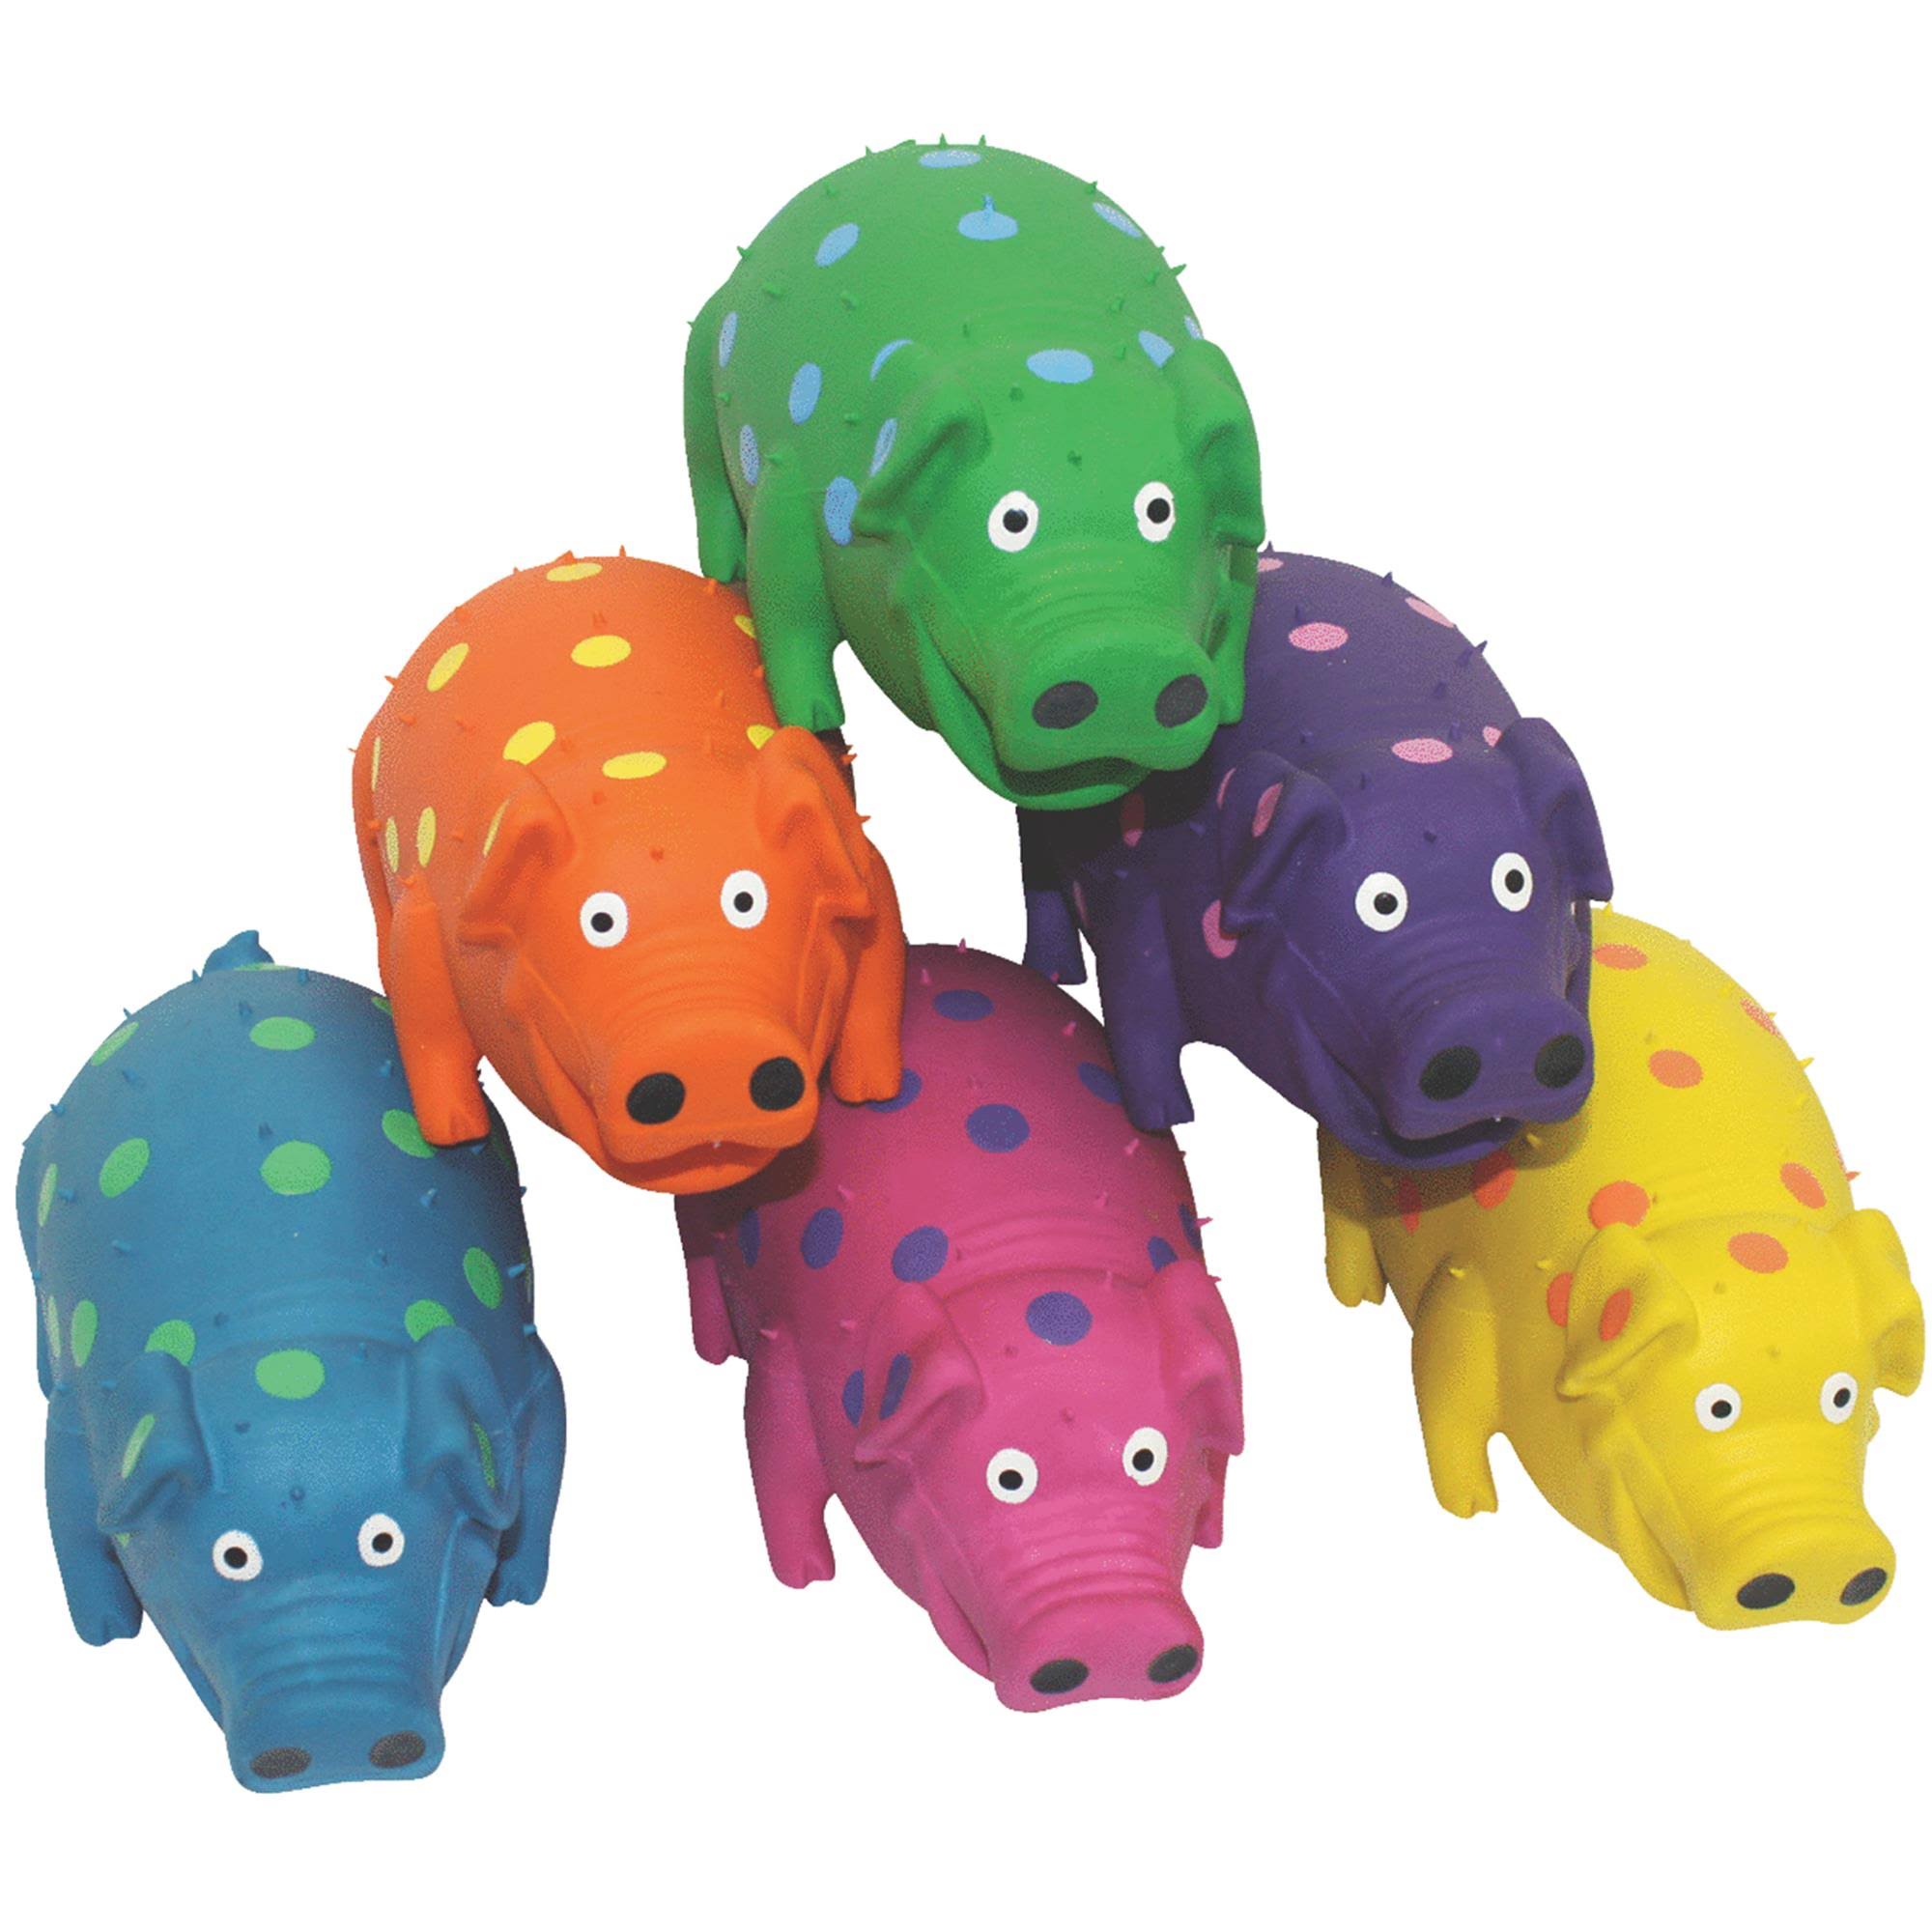 Multipet's Latex Polka Dot Globlet Pig Dog Toy - Assorted Colors, 9"